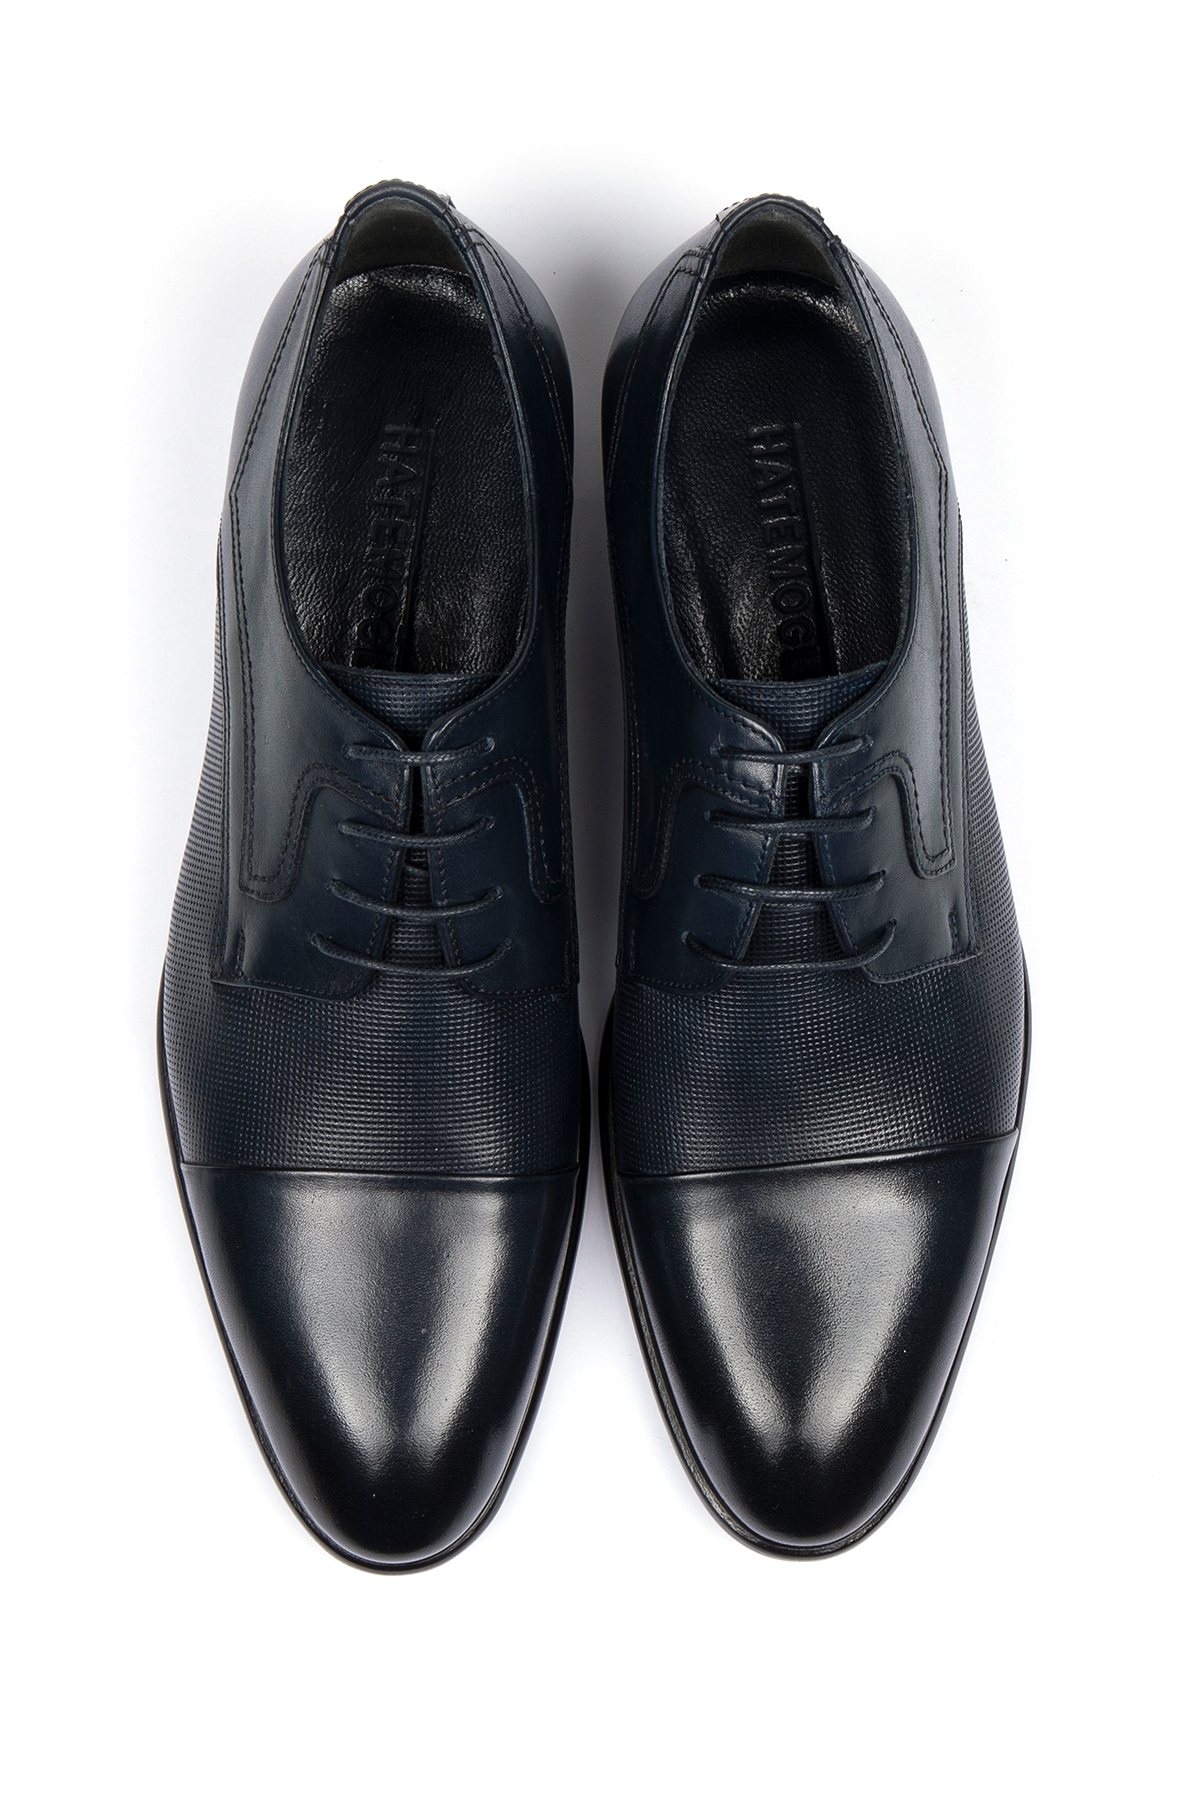 Siyah Deri Klasik Ayakkabı